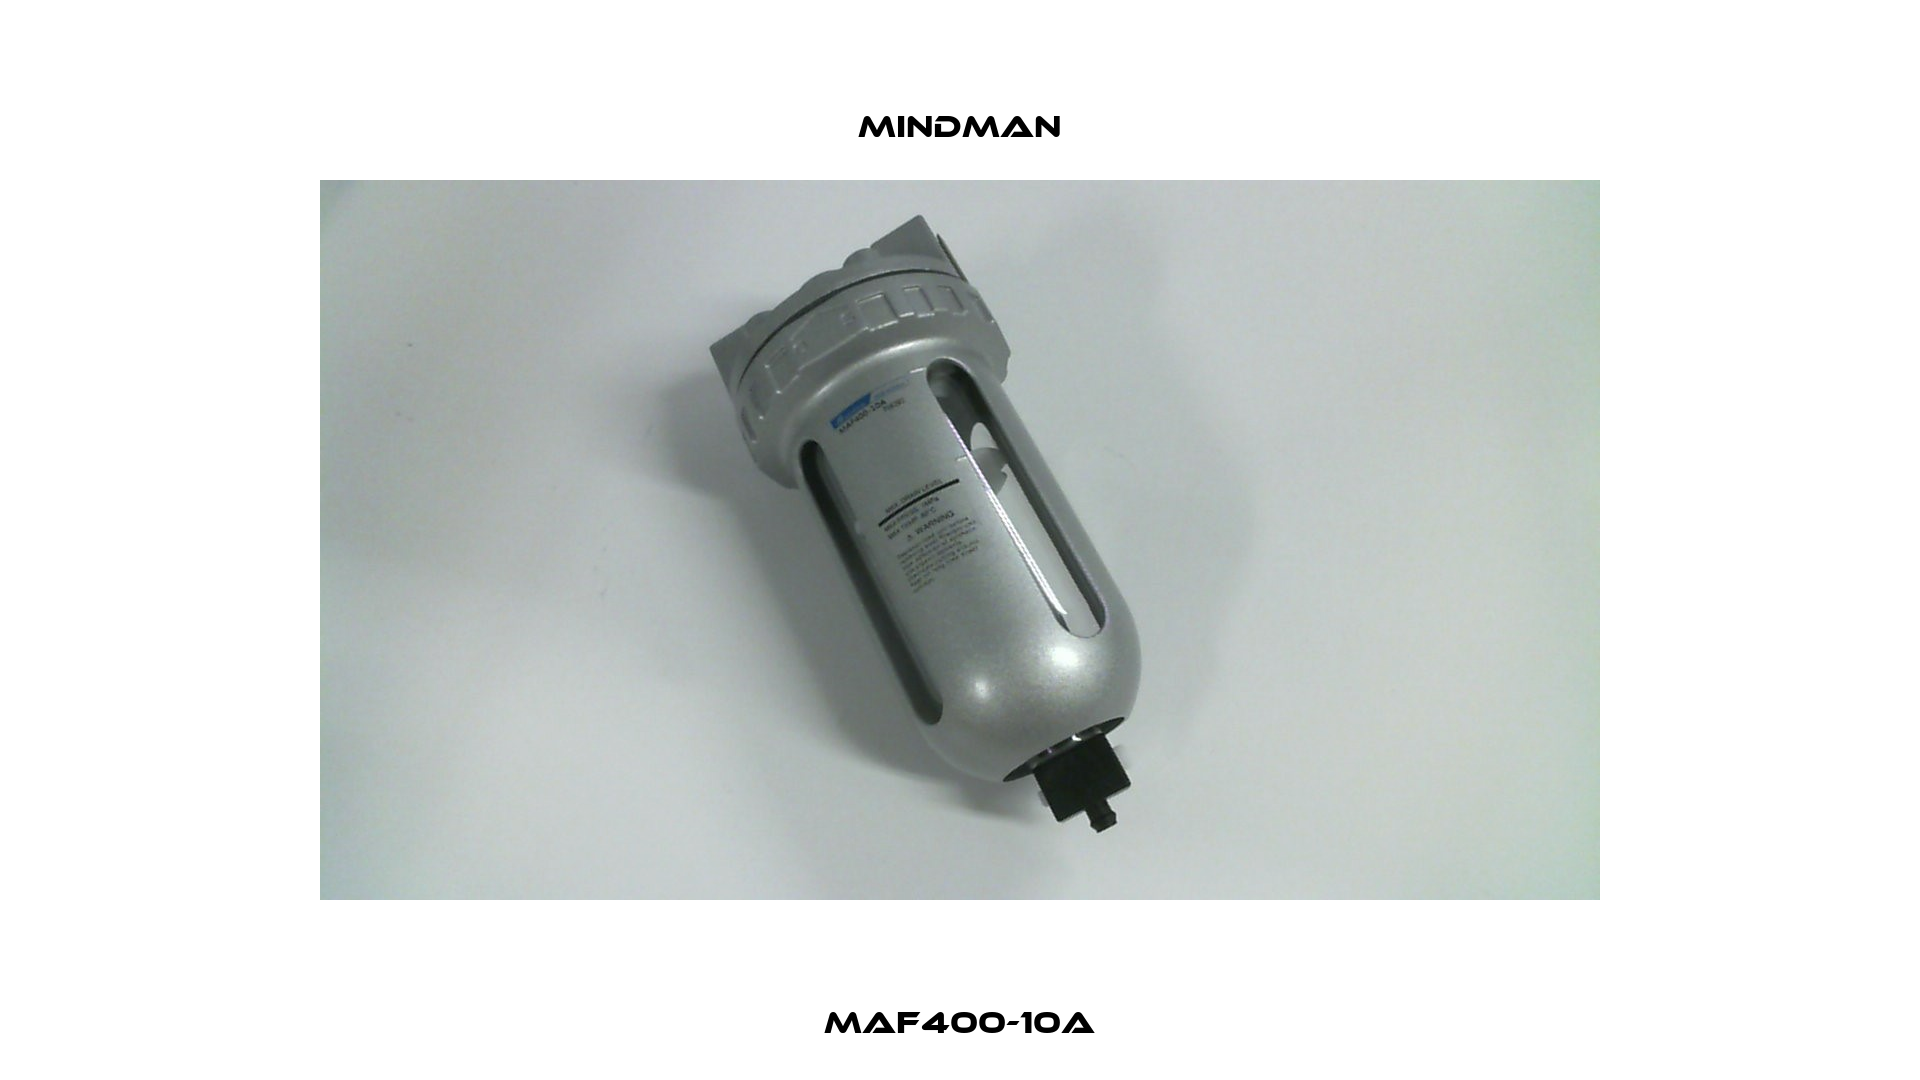 MAF400-10A Mindman